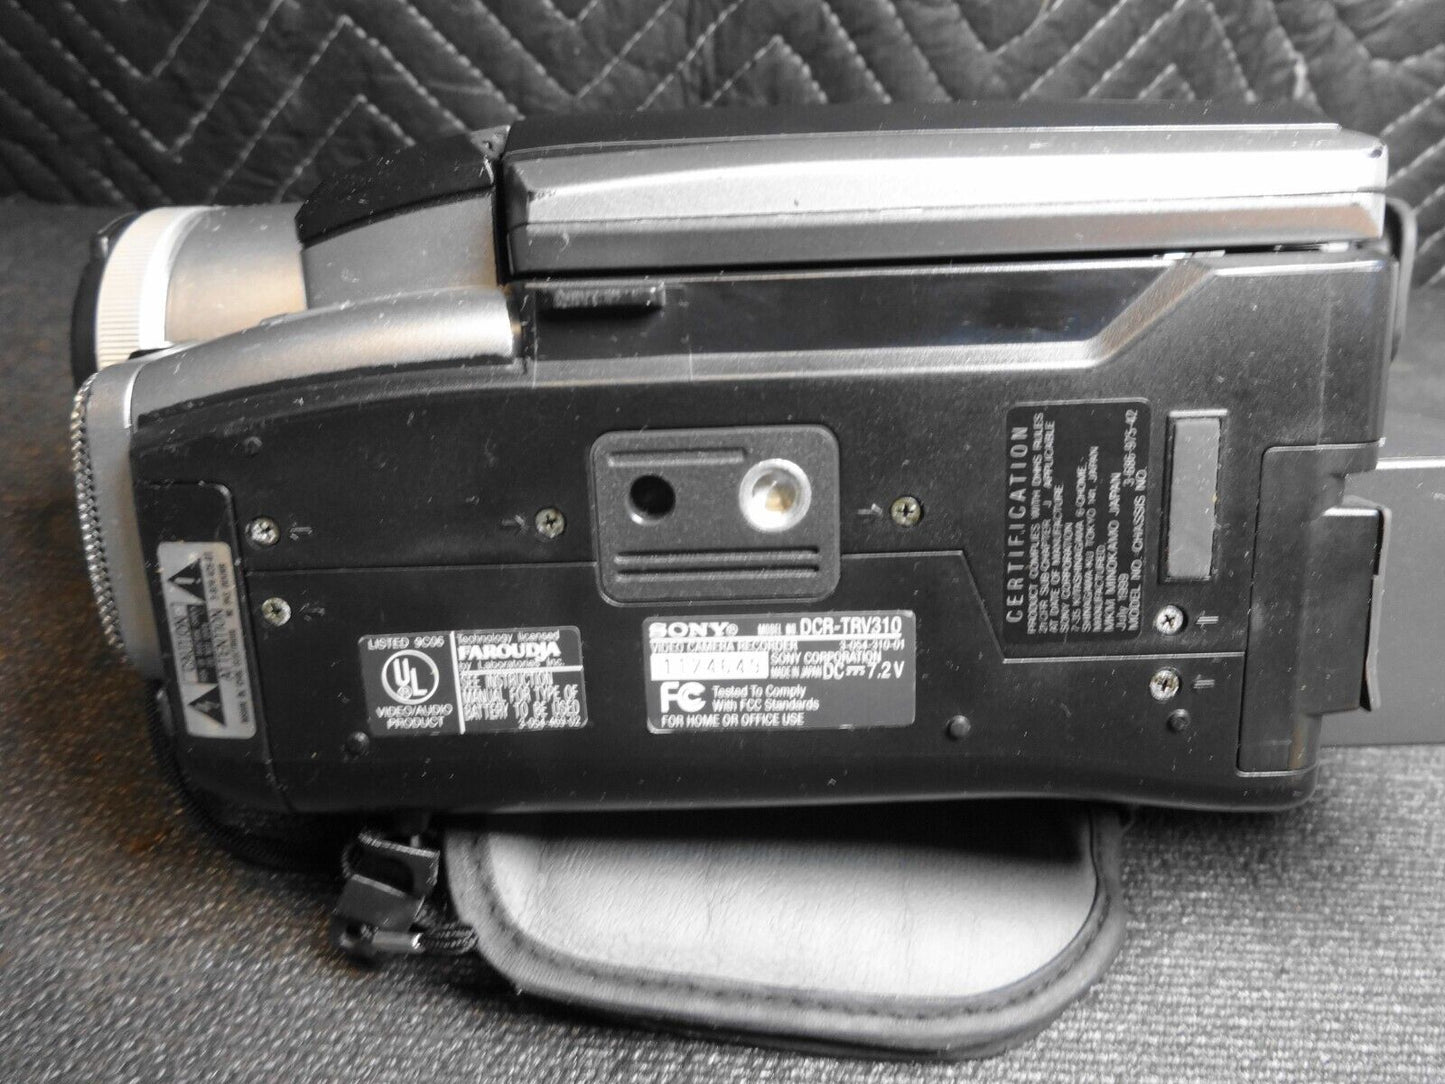 Sony DCR-TRV310 Digital8 Hi8 Handycam Nightshot Camcorder Bundle - Tested